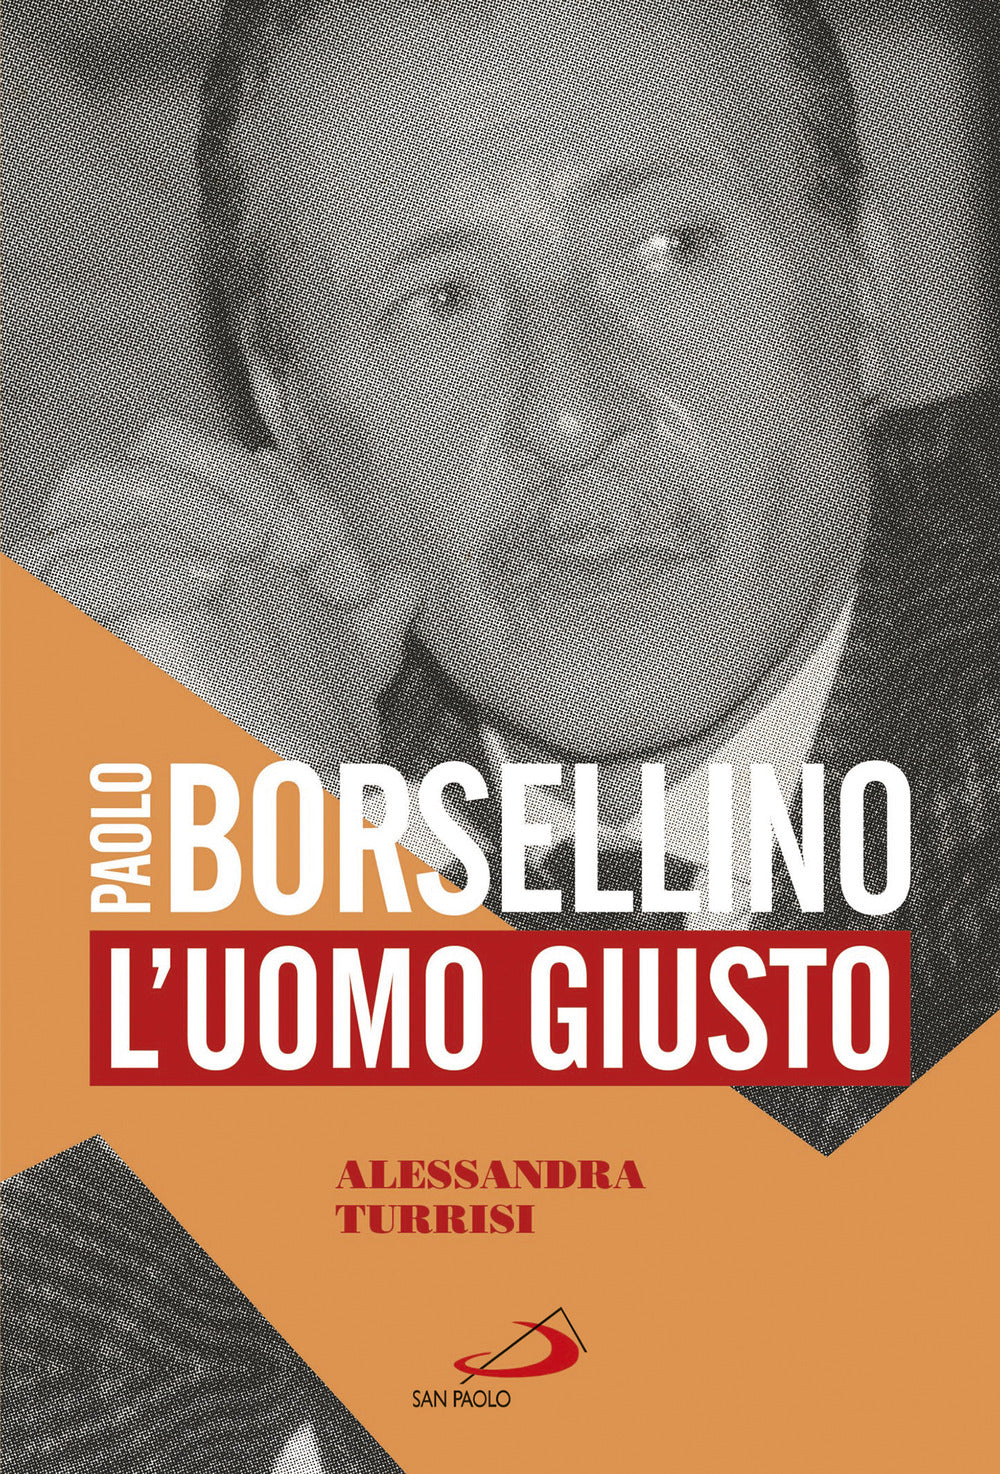 Paolo Borsellino. L'uomo giusto.